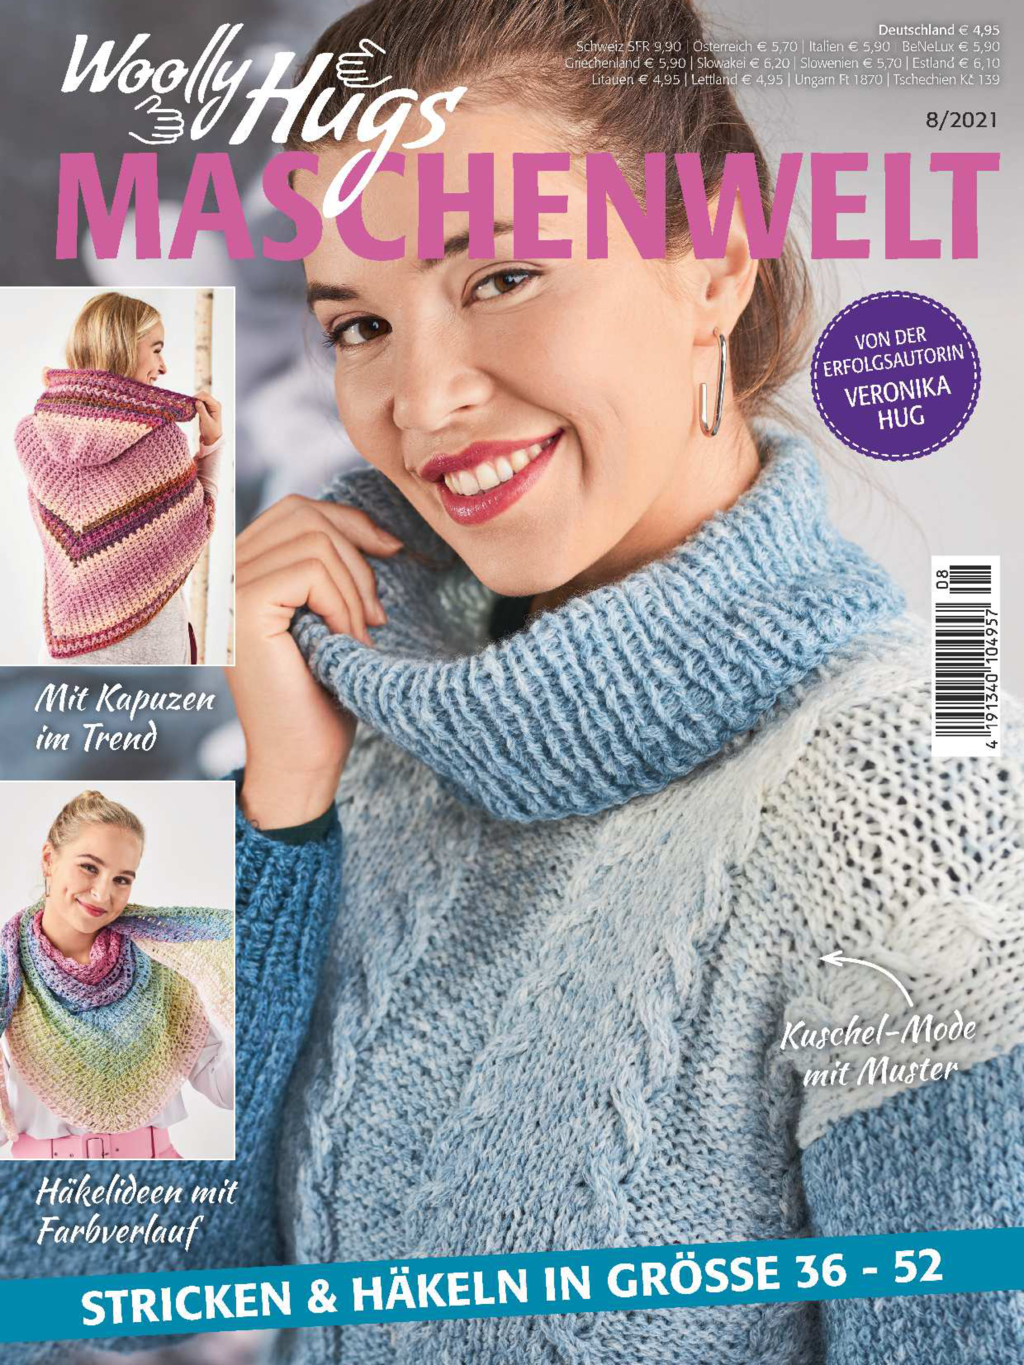 E-Paper: Woolly Hugs Maschenwelt  Nr. 8/2021 - Stricken & Häkeln in Grösse 36 - 52